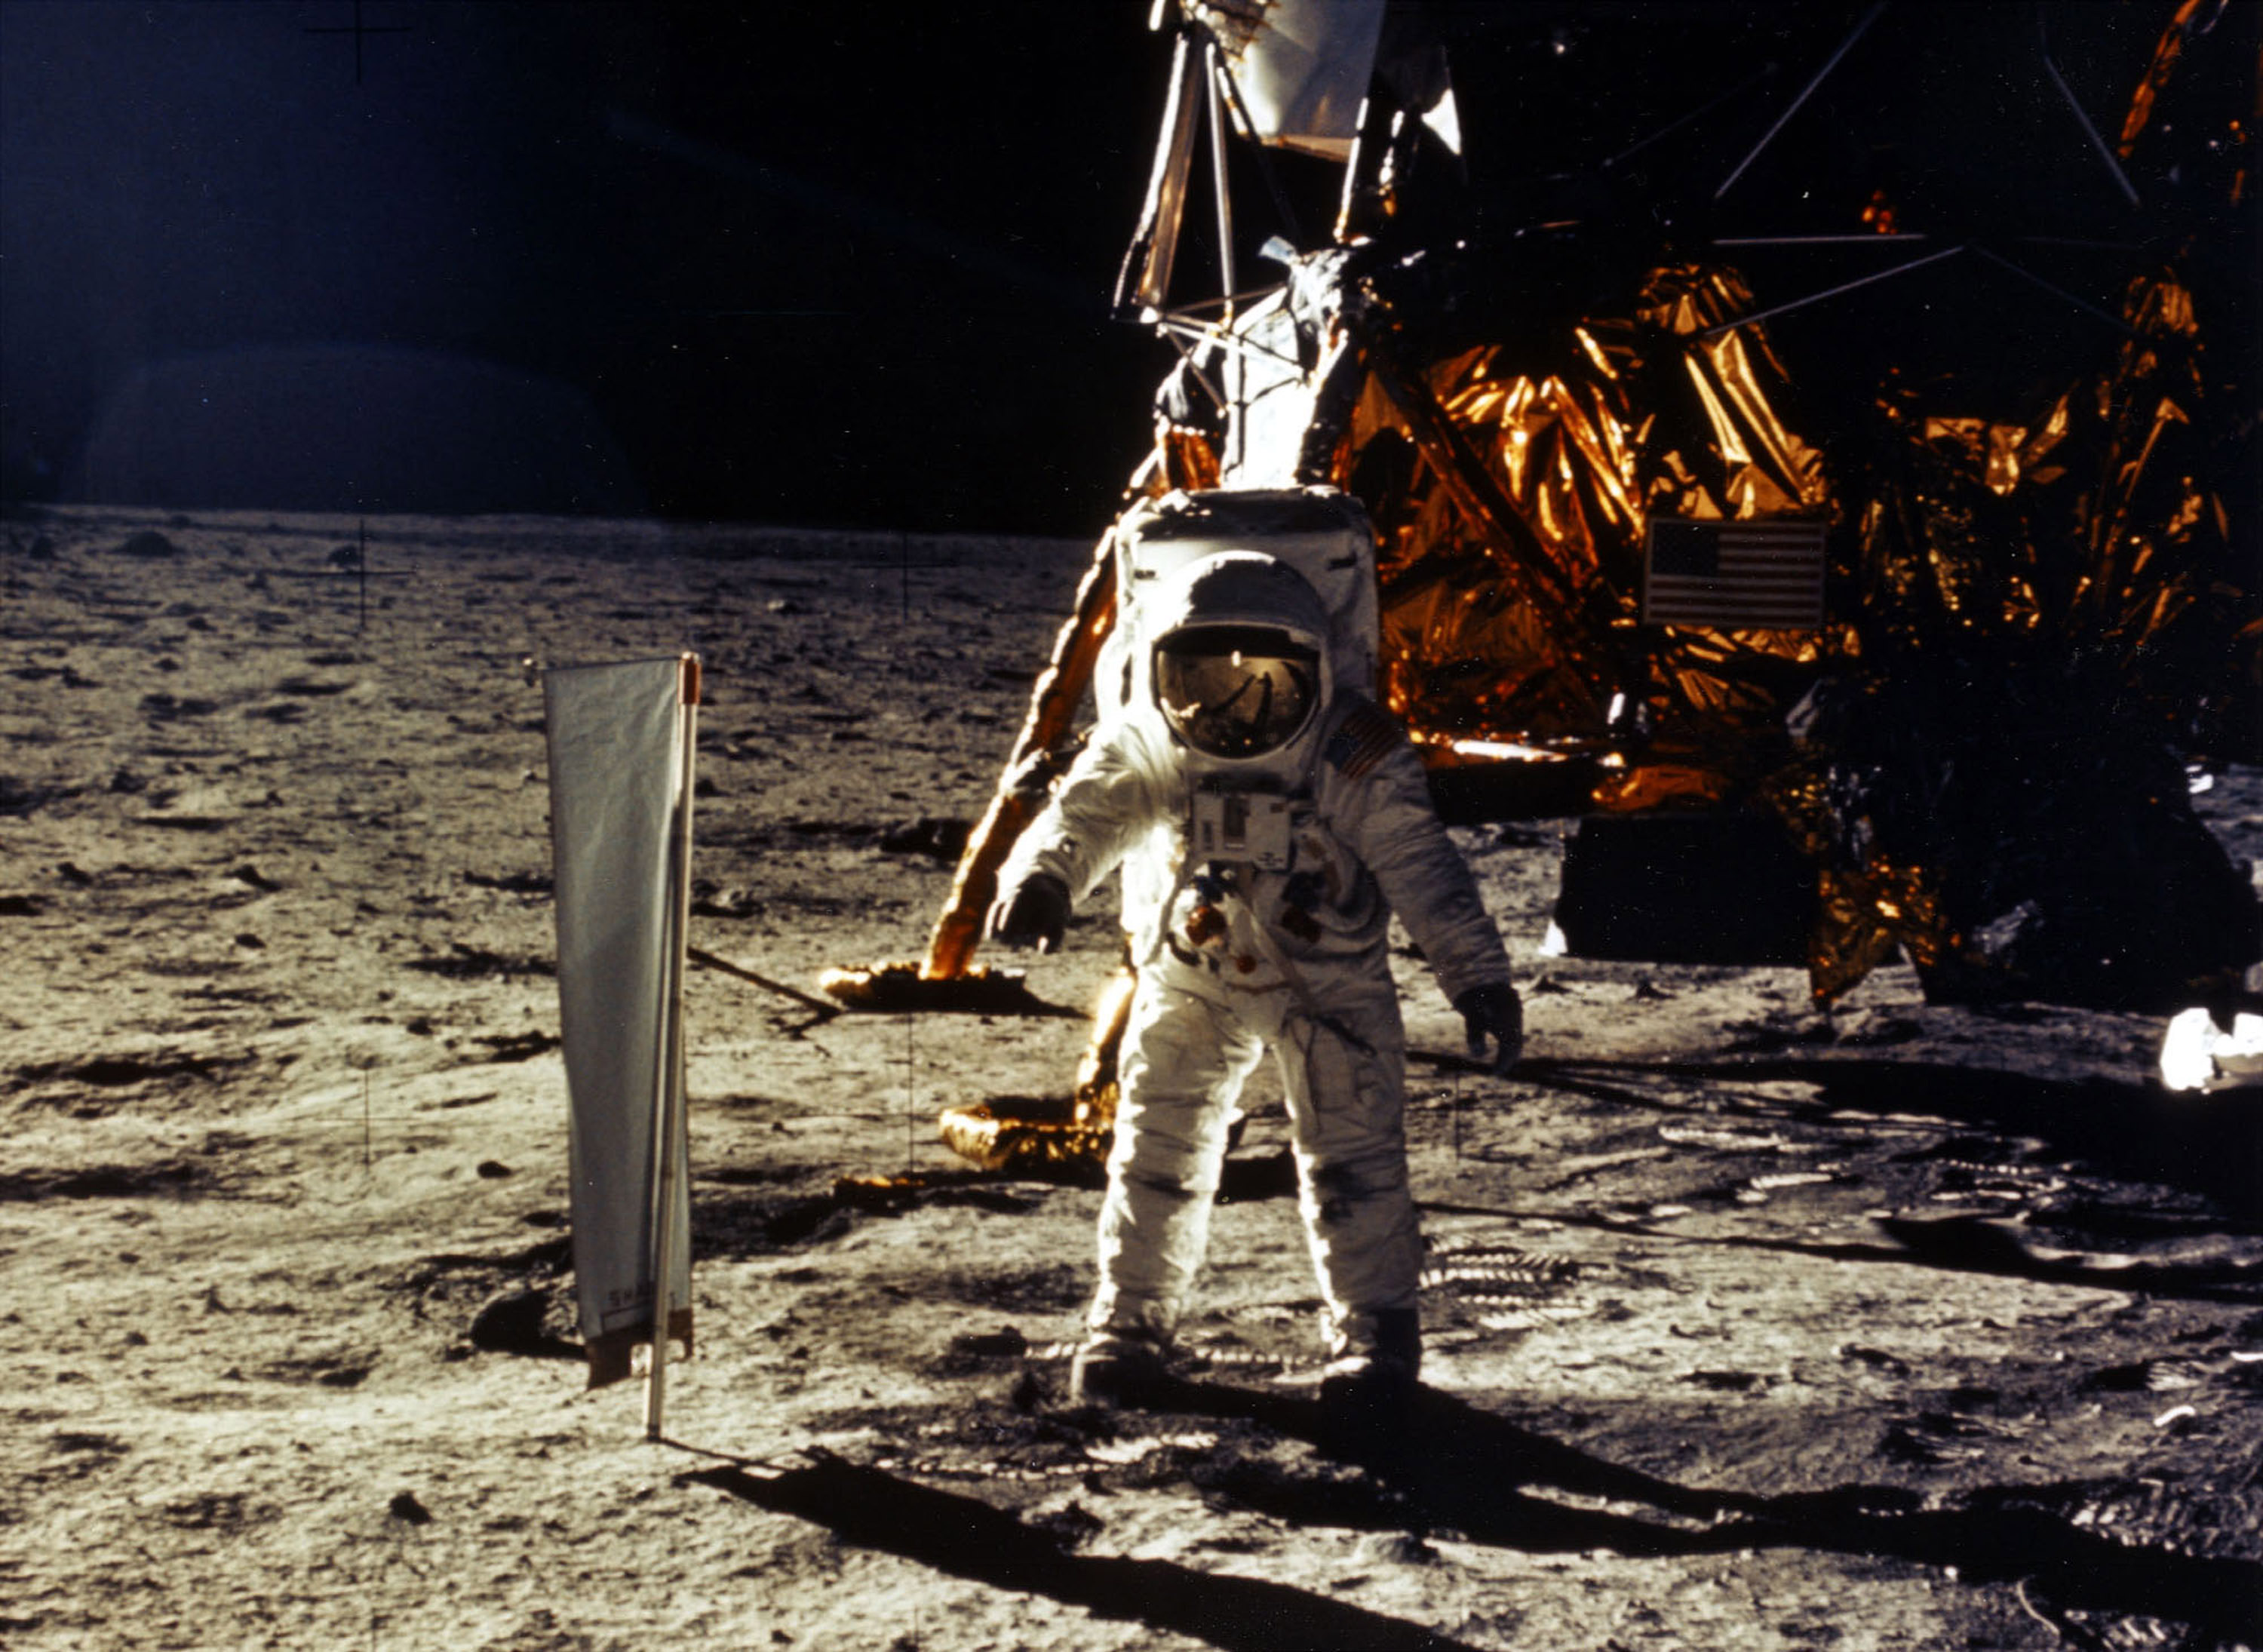 Apollo 11 1969. Armstrong on the moon